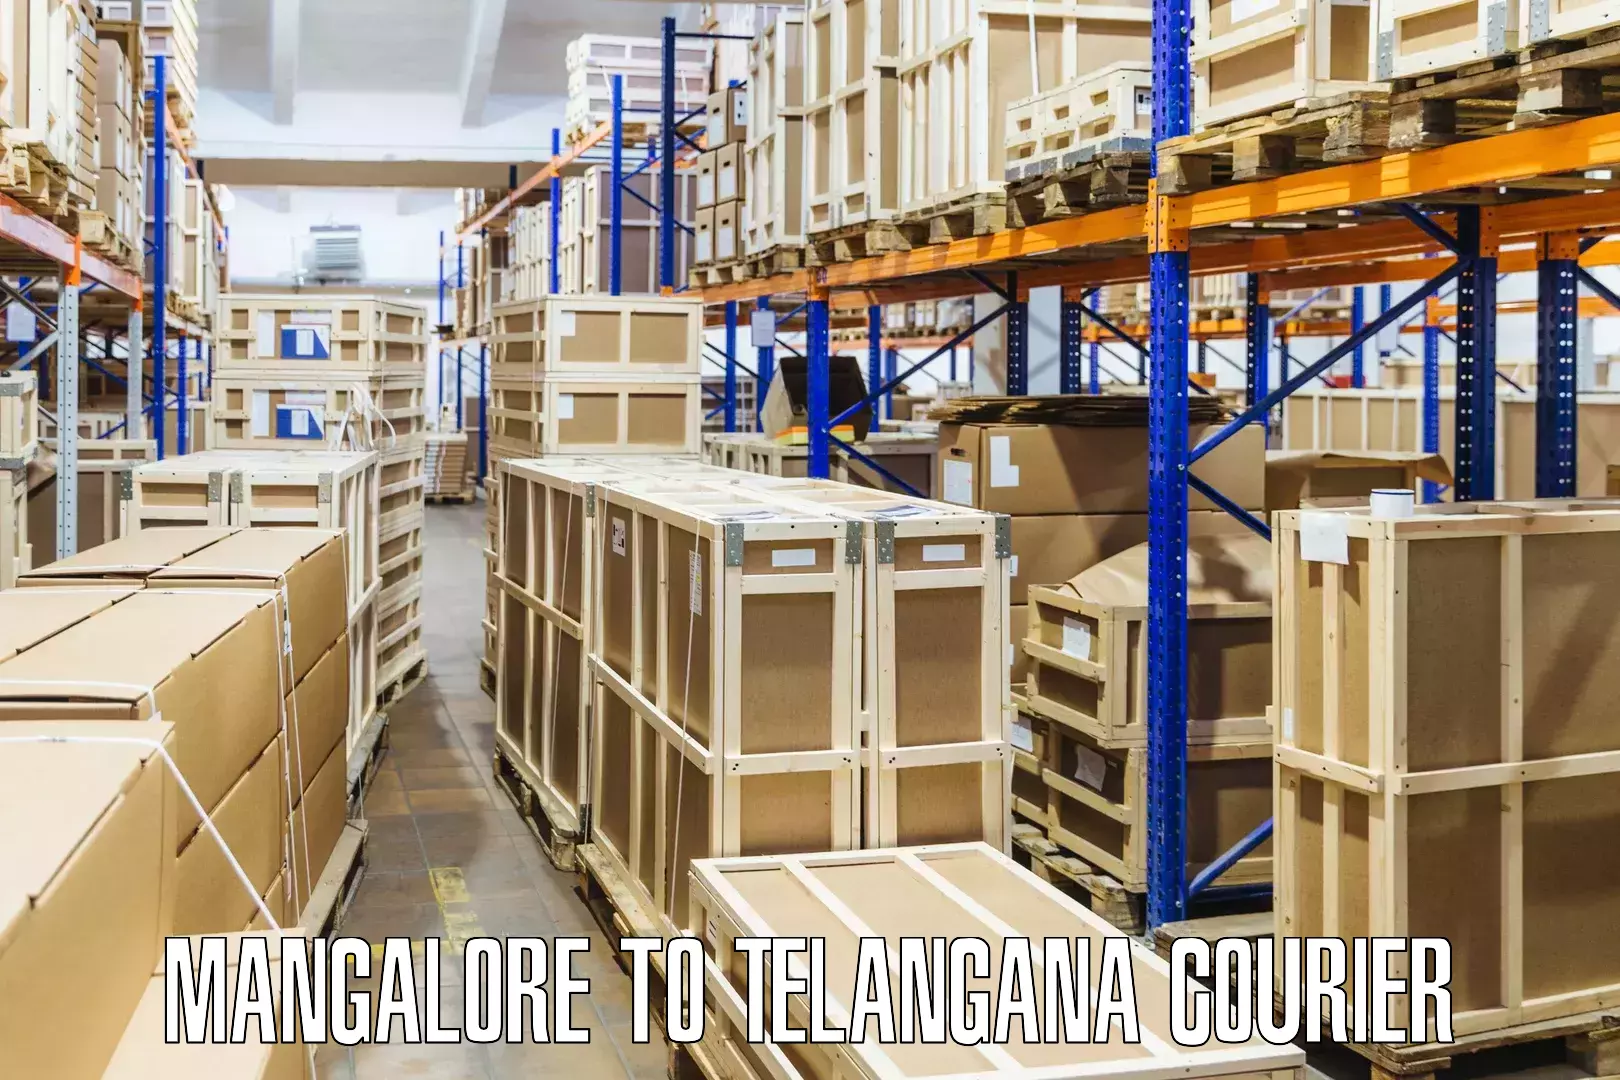 Local delivery service Mangalore to Yellareddipet